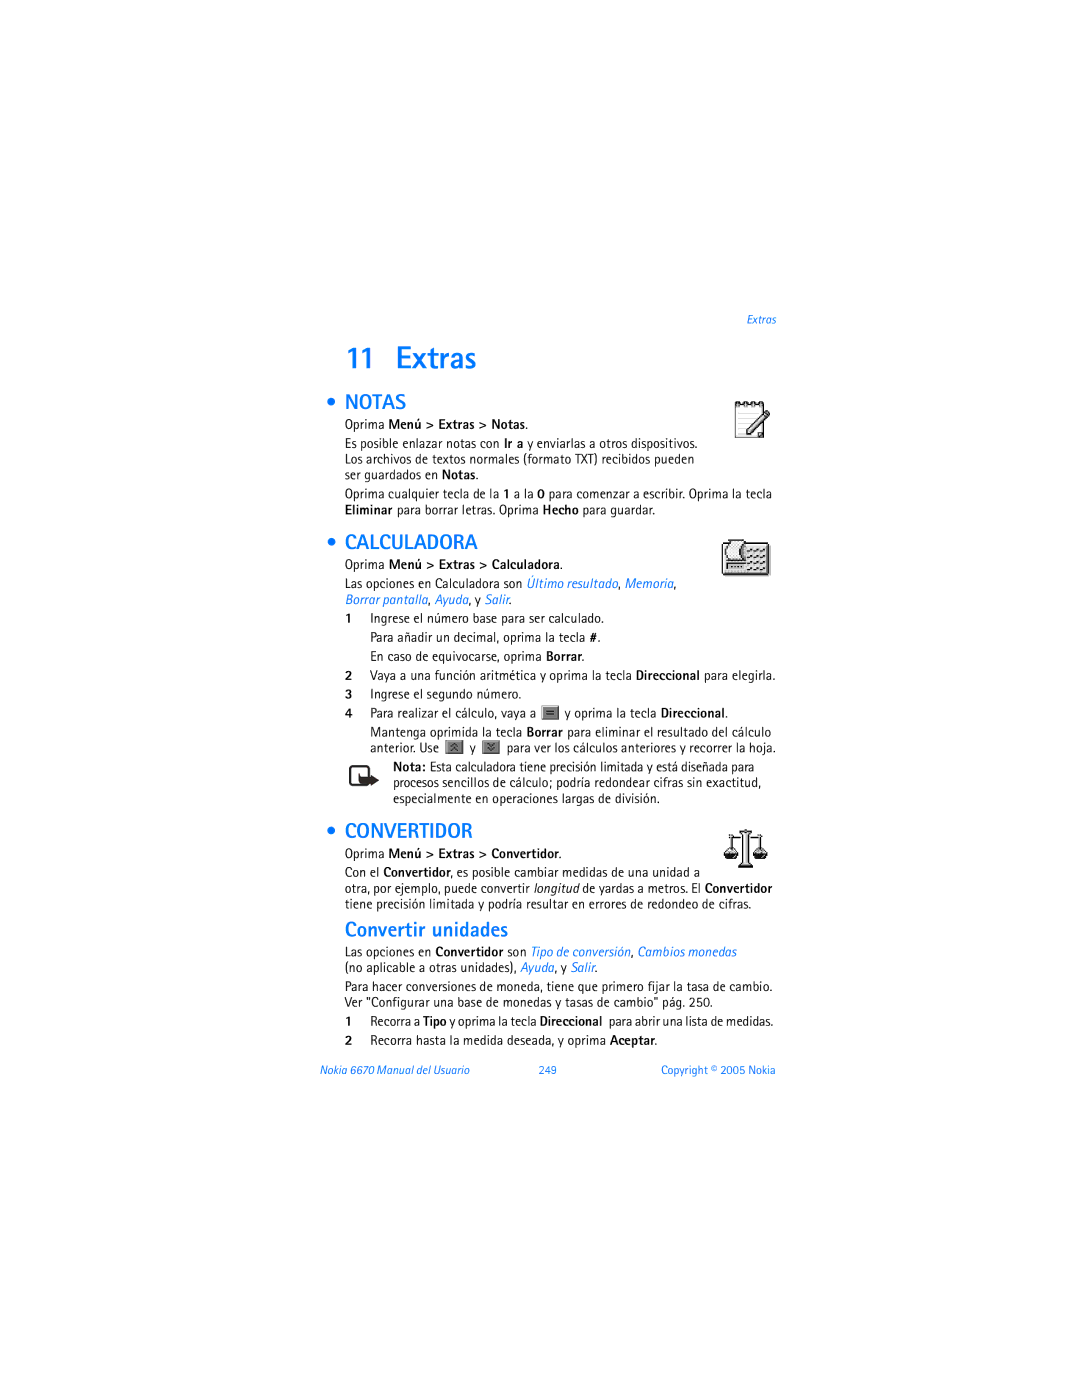 Nokia 6670 manual Notas, Calculadora, Convertidor, Convertir unidades 